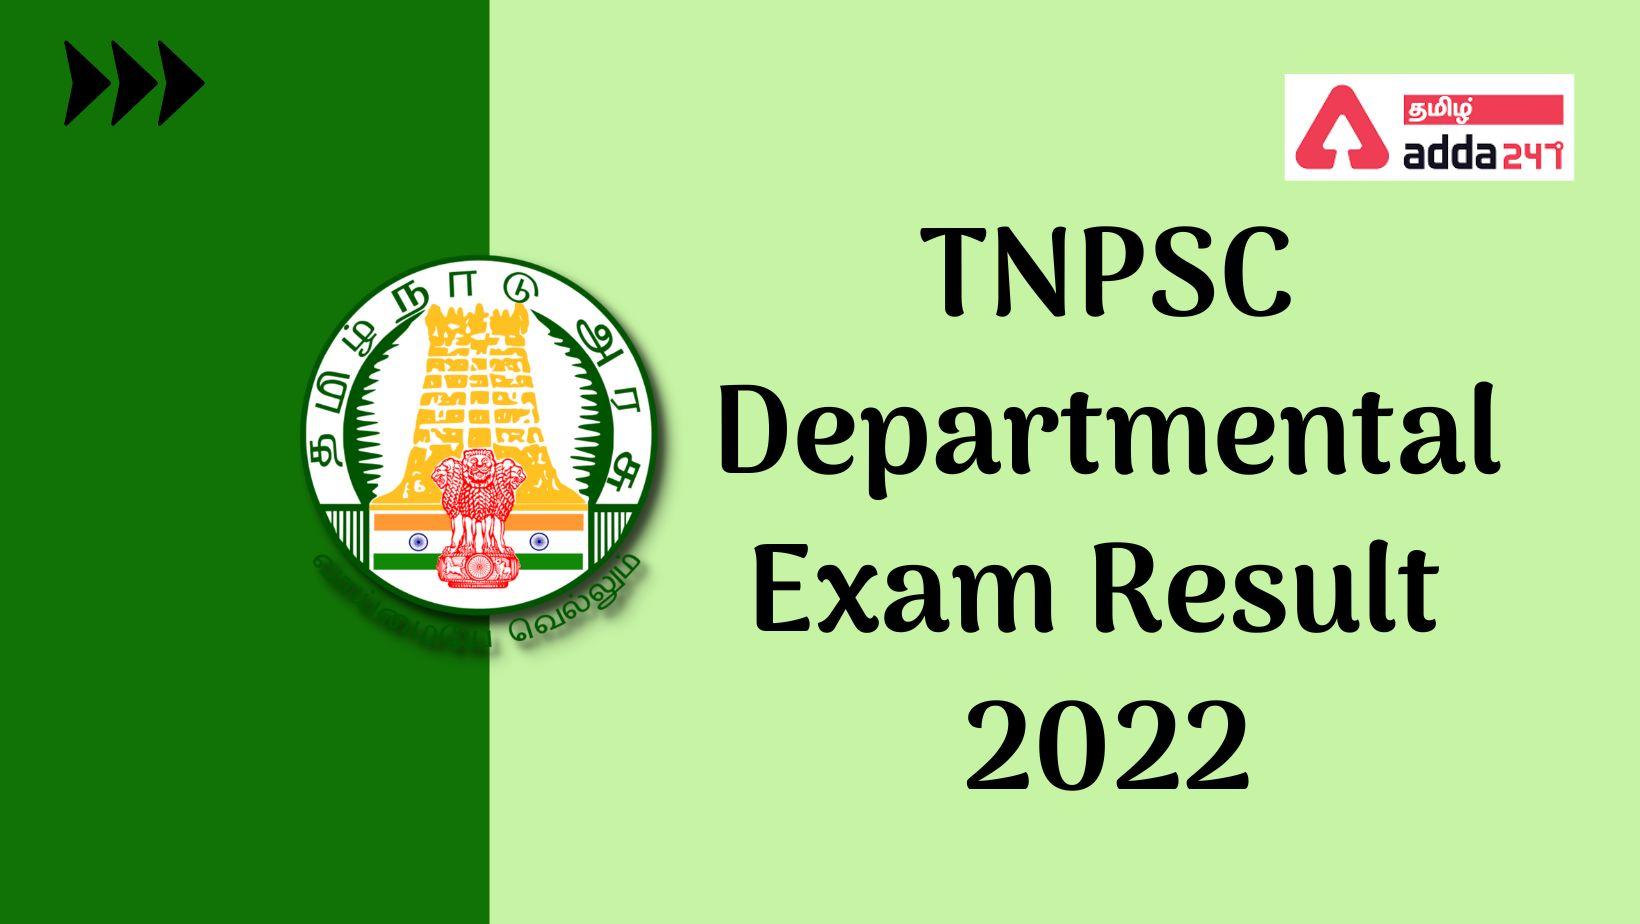 TNPSC Departmental Exam Result 2022